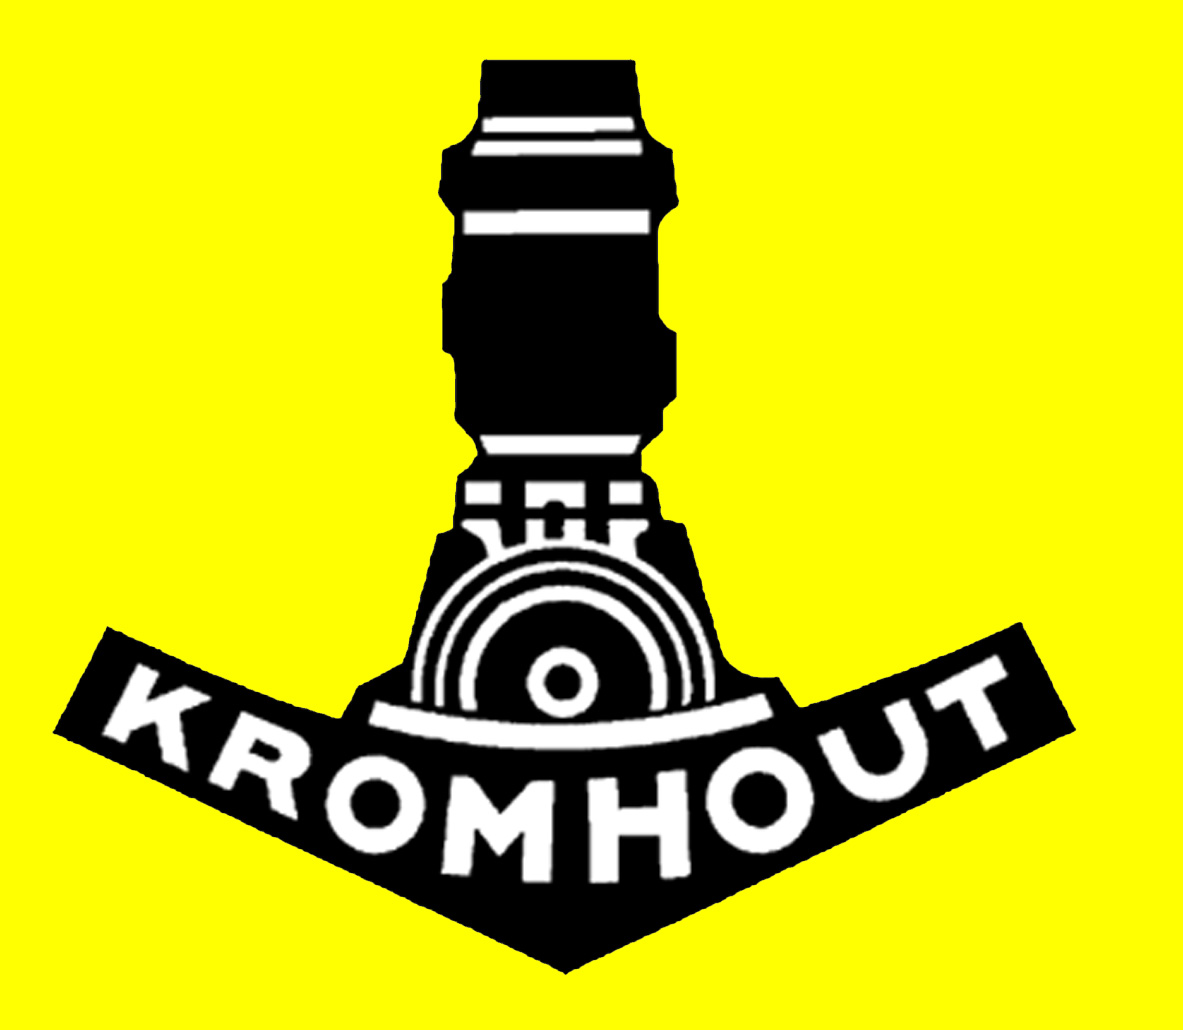 Kromhout Logo photo - 1